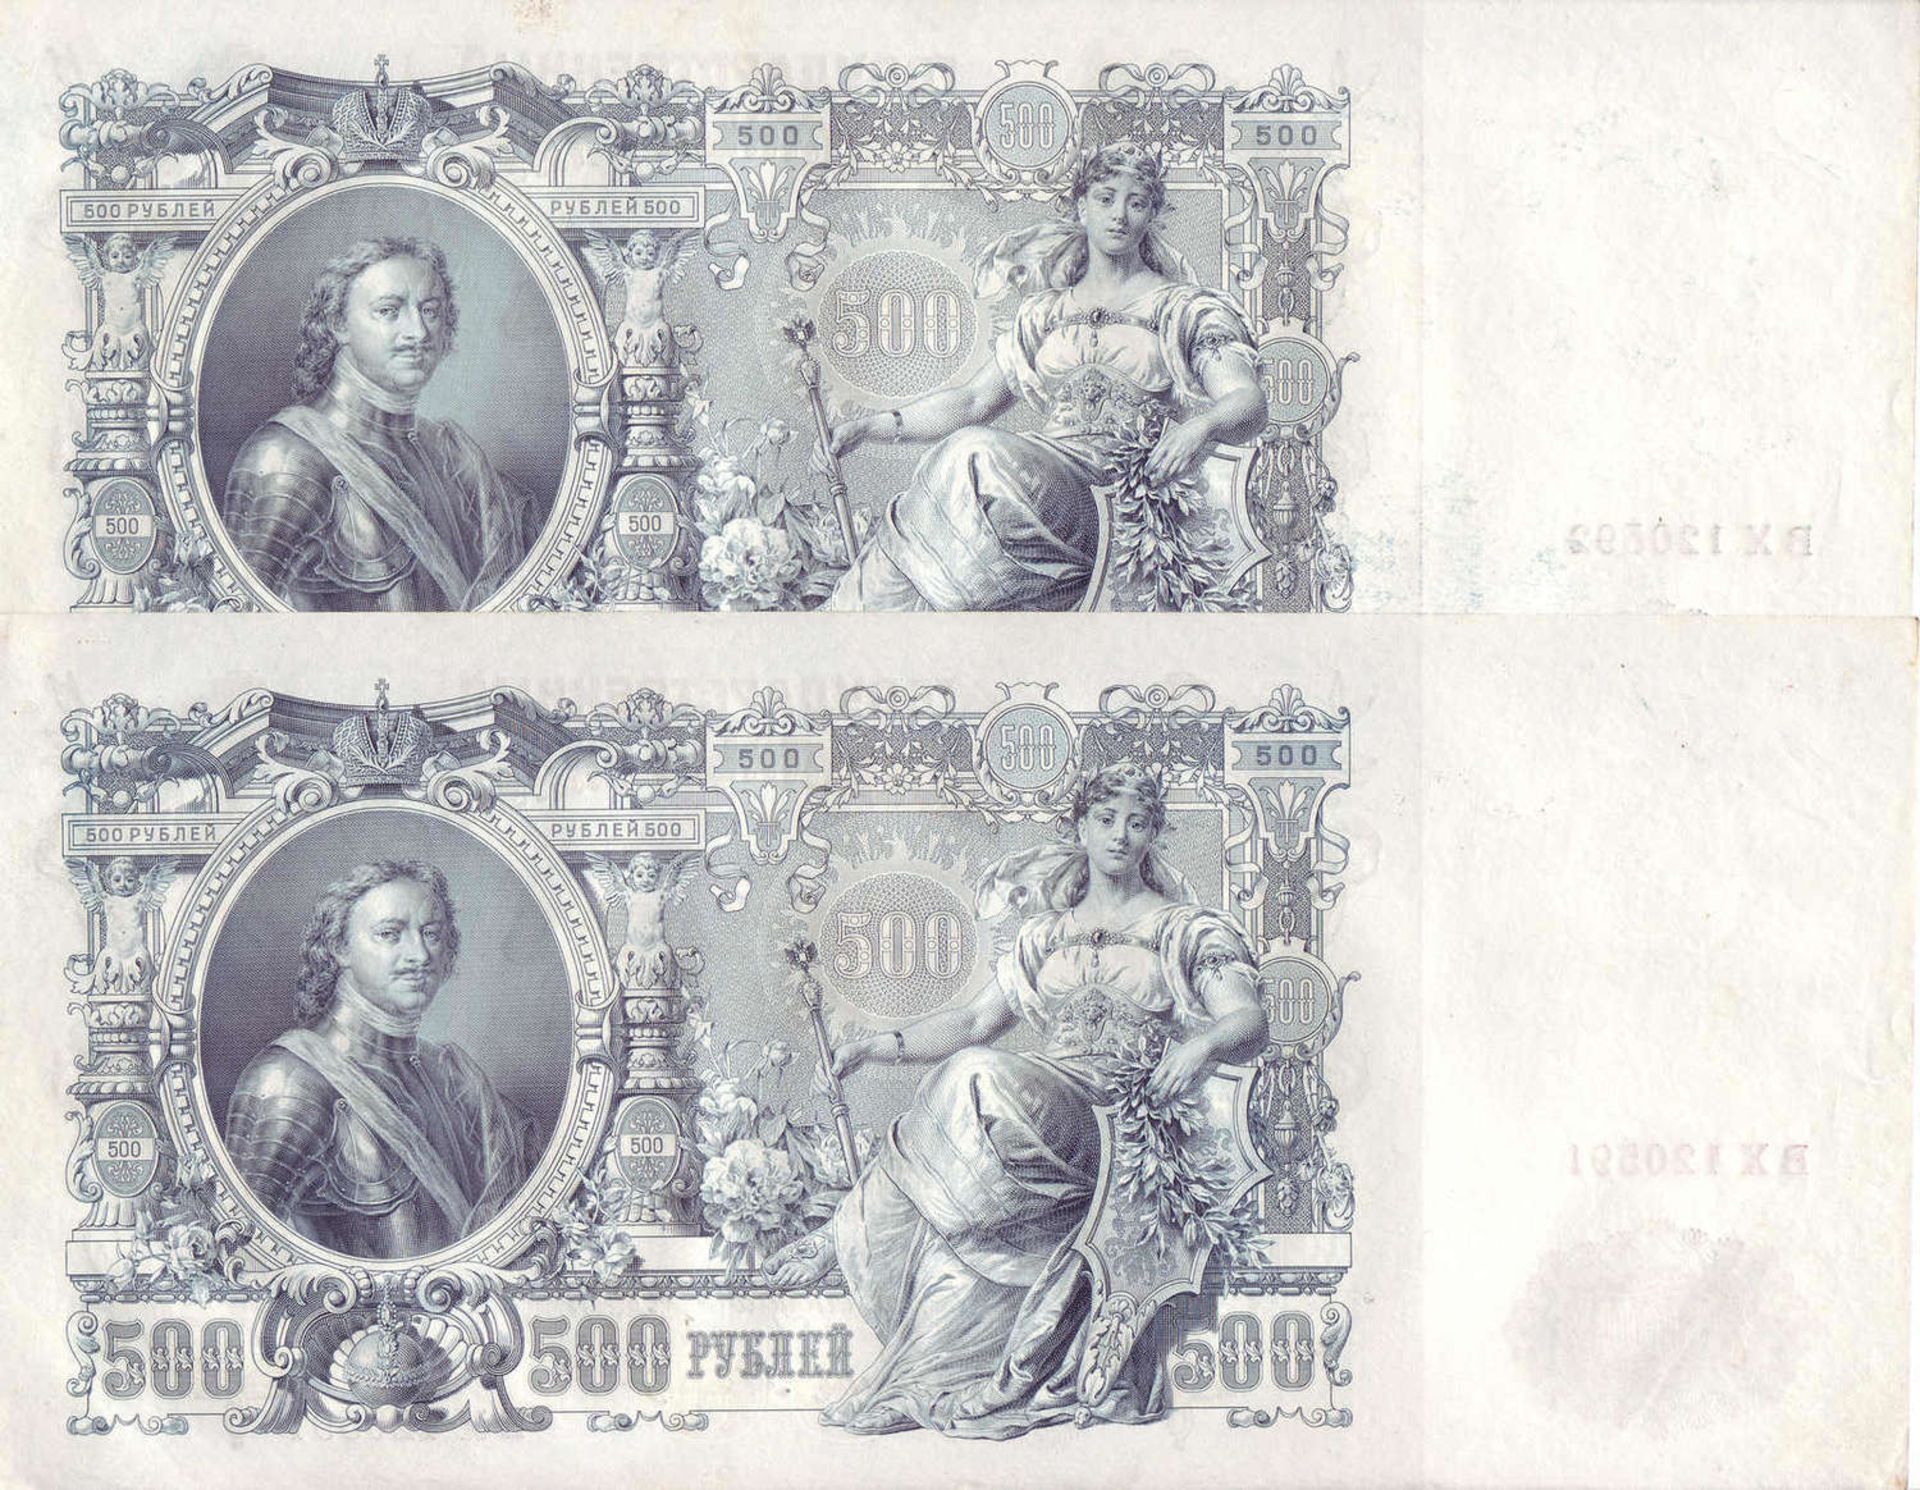 Russland Zarenreich 1910/12, 1 x 100 Rubel und 2 x 500 Rubel Banknote. 500 Rubel sehr guter Zustand, - Bild 3 aus 4